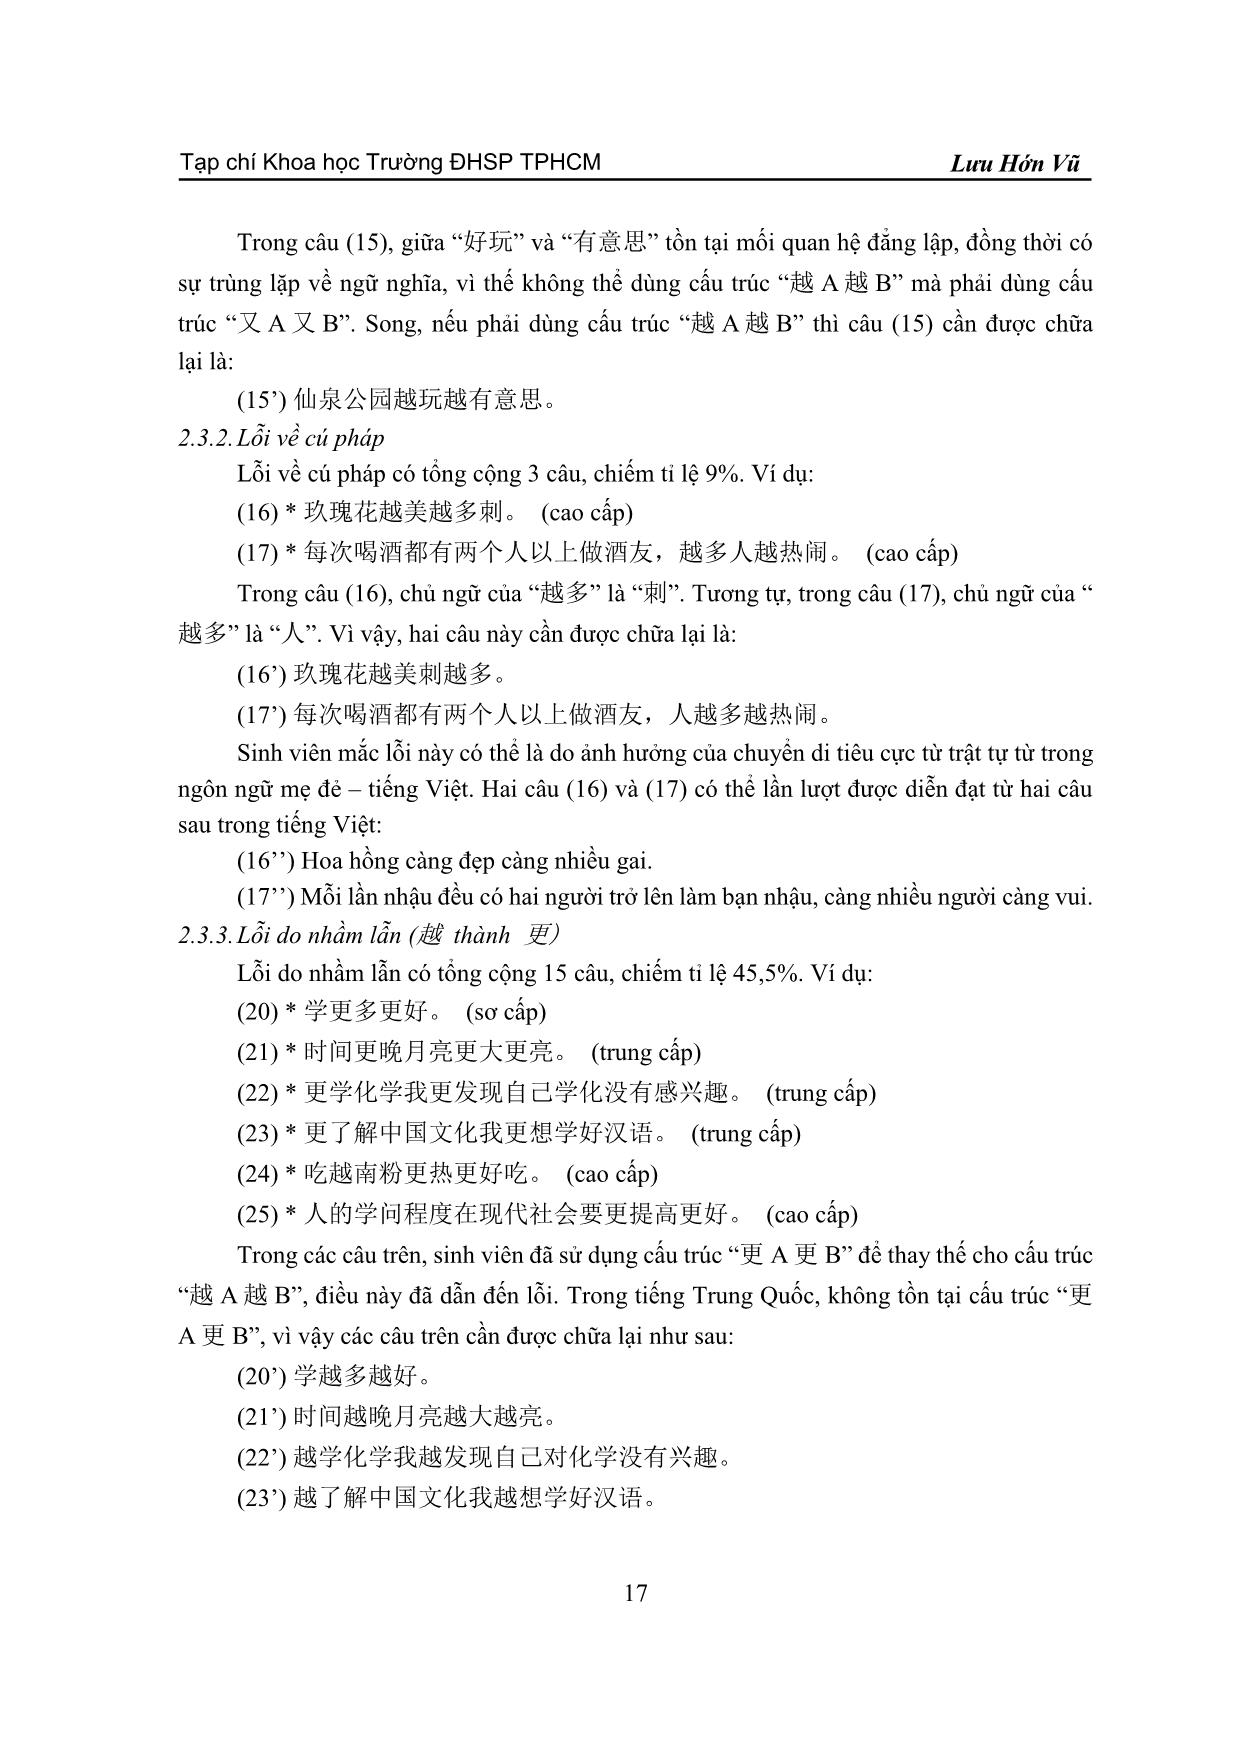 Phân tích lỗi sử dụng cấu trúc “yue A yue B” (越 A 越 B) của sinh viên Việt Nam trang 5